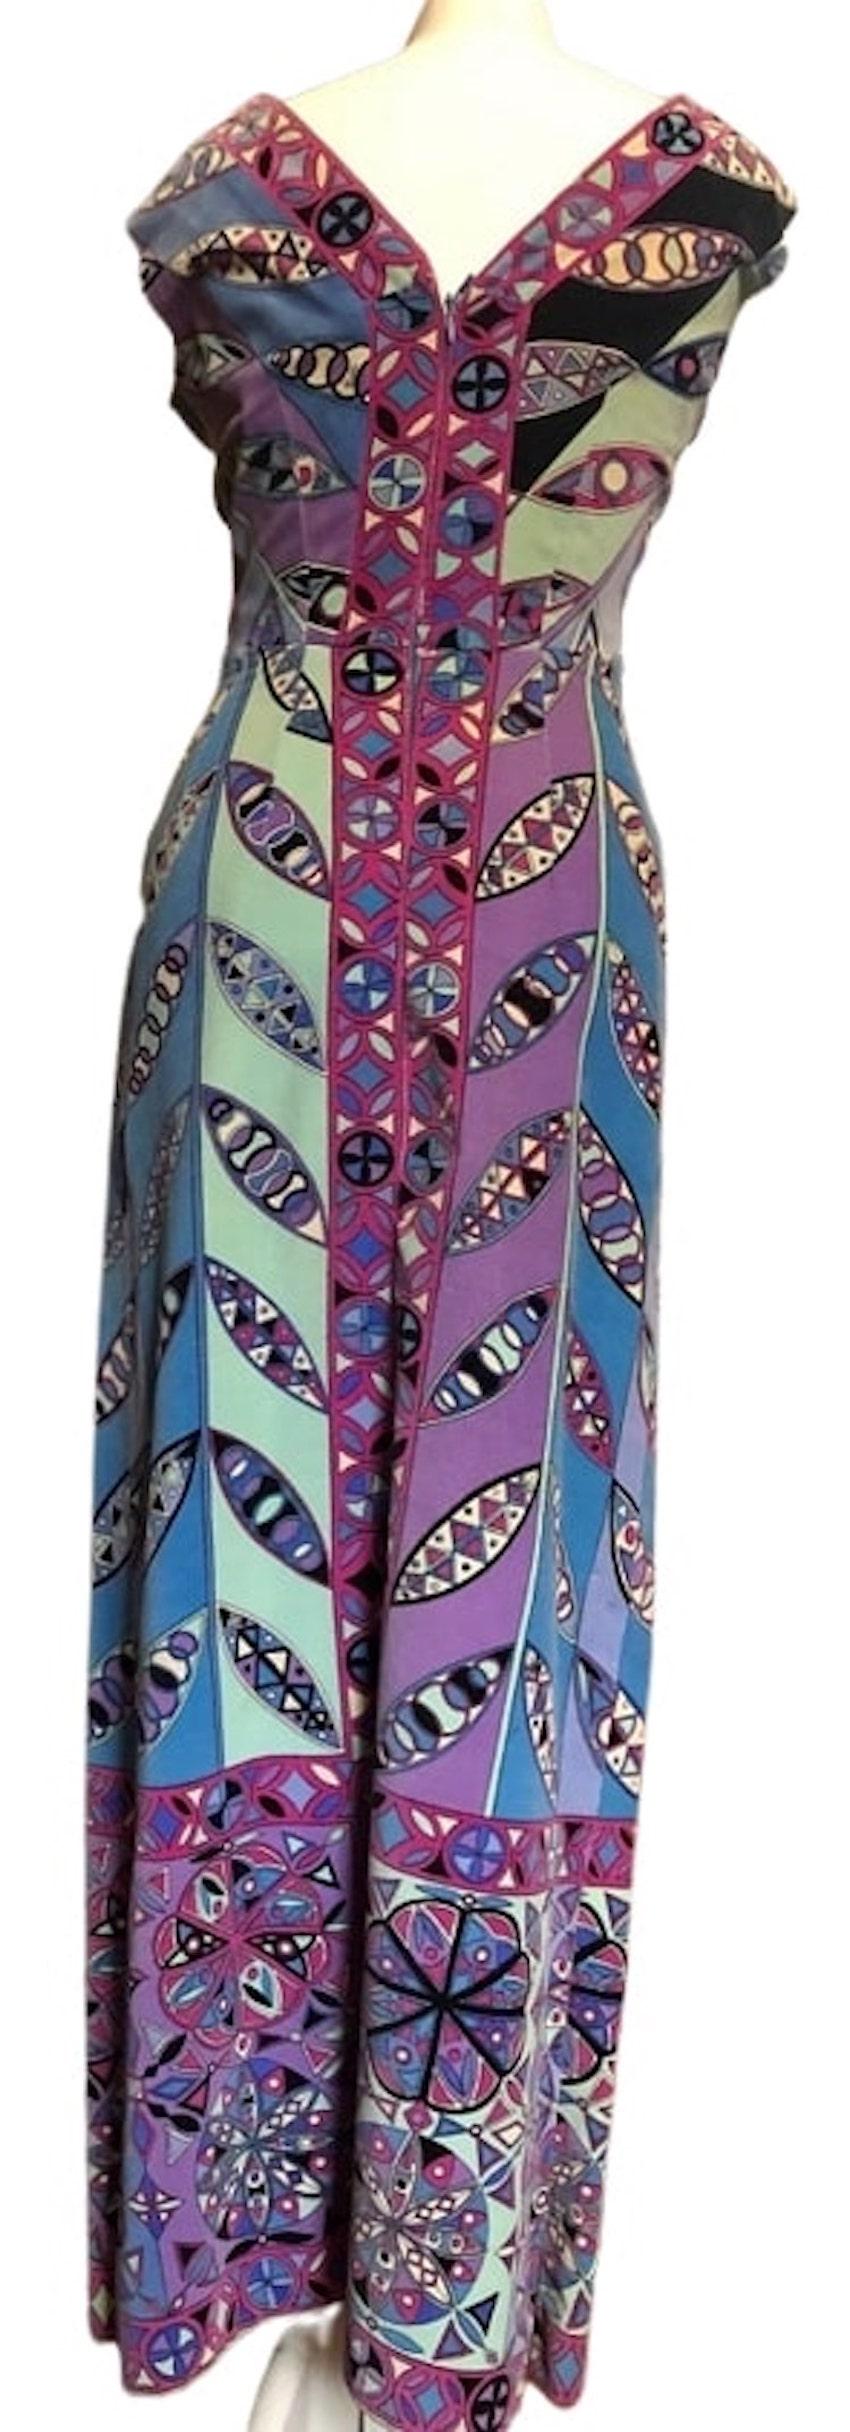 EMILIO PUCCI 1960er Jahre Mehrfarbiges langes Kleid mit V-Ausschnitt und Signaturdruck 
Ein wunderschönes Emilio Pucci Vintage-Kleid mit abstrakten Motiven. Es ist ein mehrfarbiges Kleid mit erstaunlichen Farbtönen mit Emilio Pucci Signatur alle